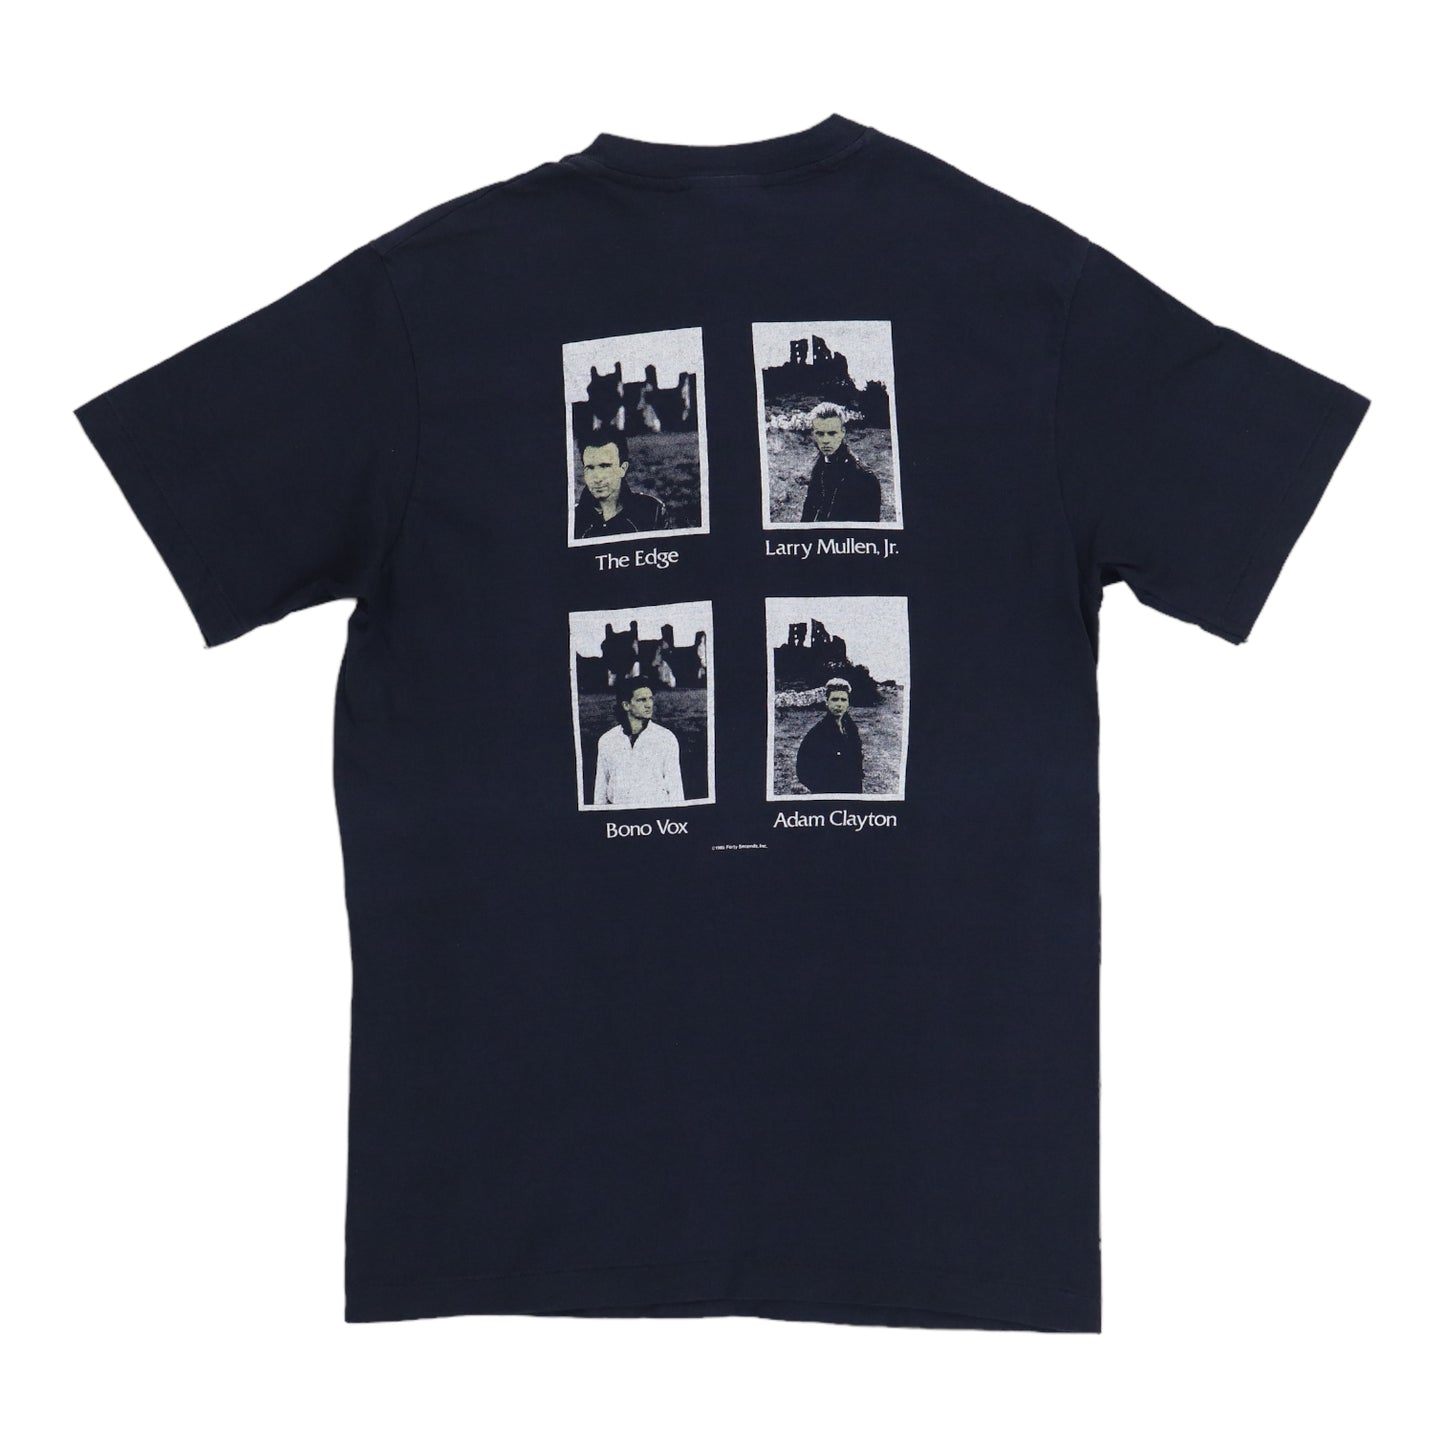 1985 U2 Unforgettable Fire Shirt